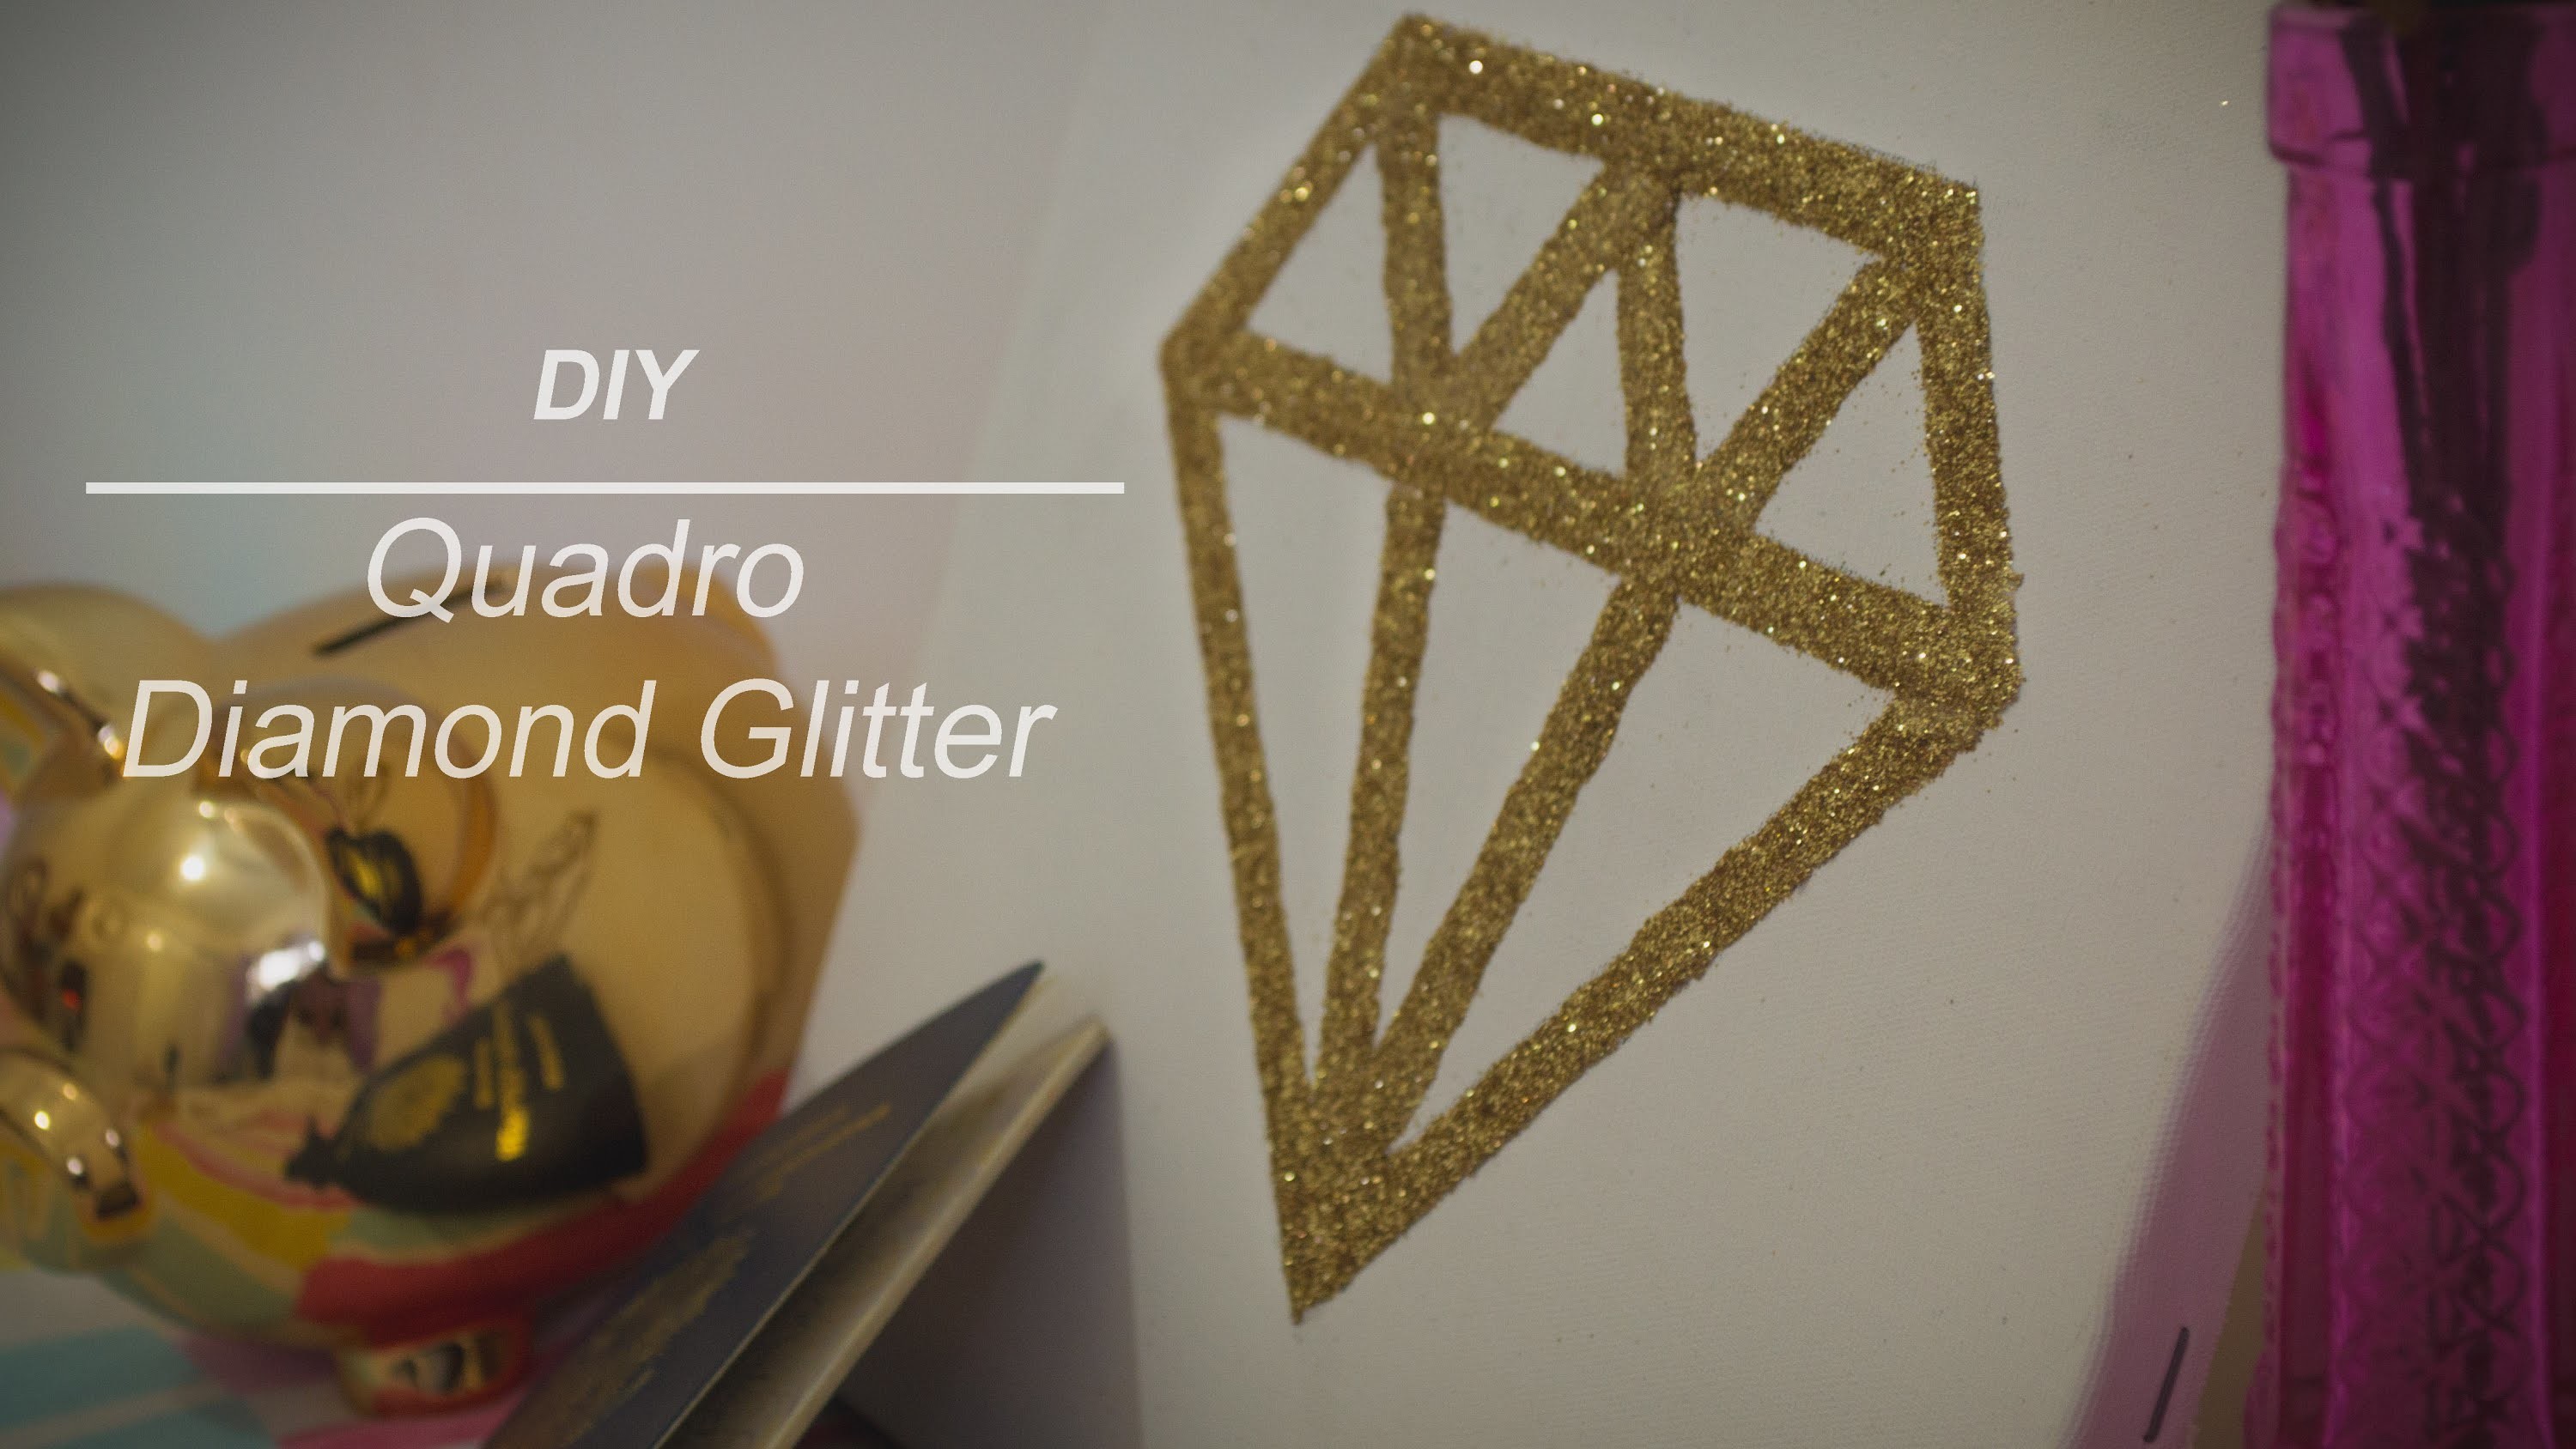 DIY - Quadro Diamante Glitter (Diamond Glitter Frame) | Laiara Dias